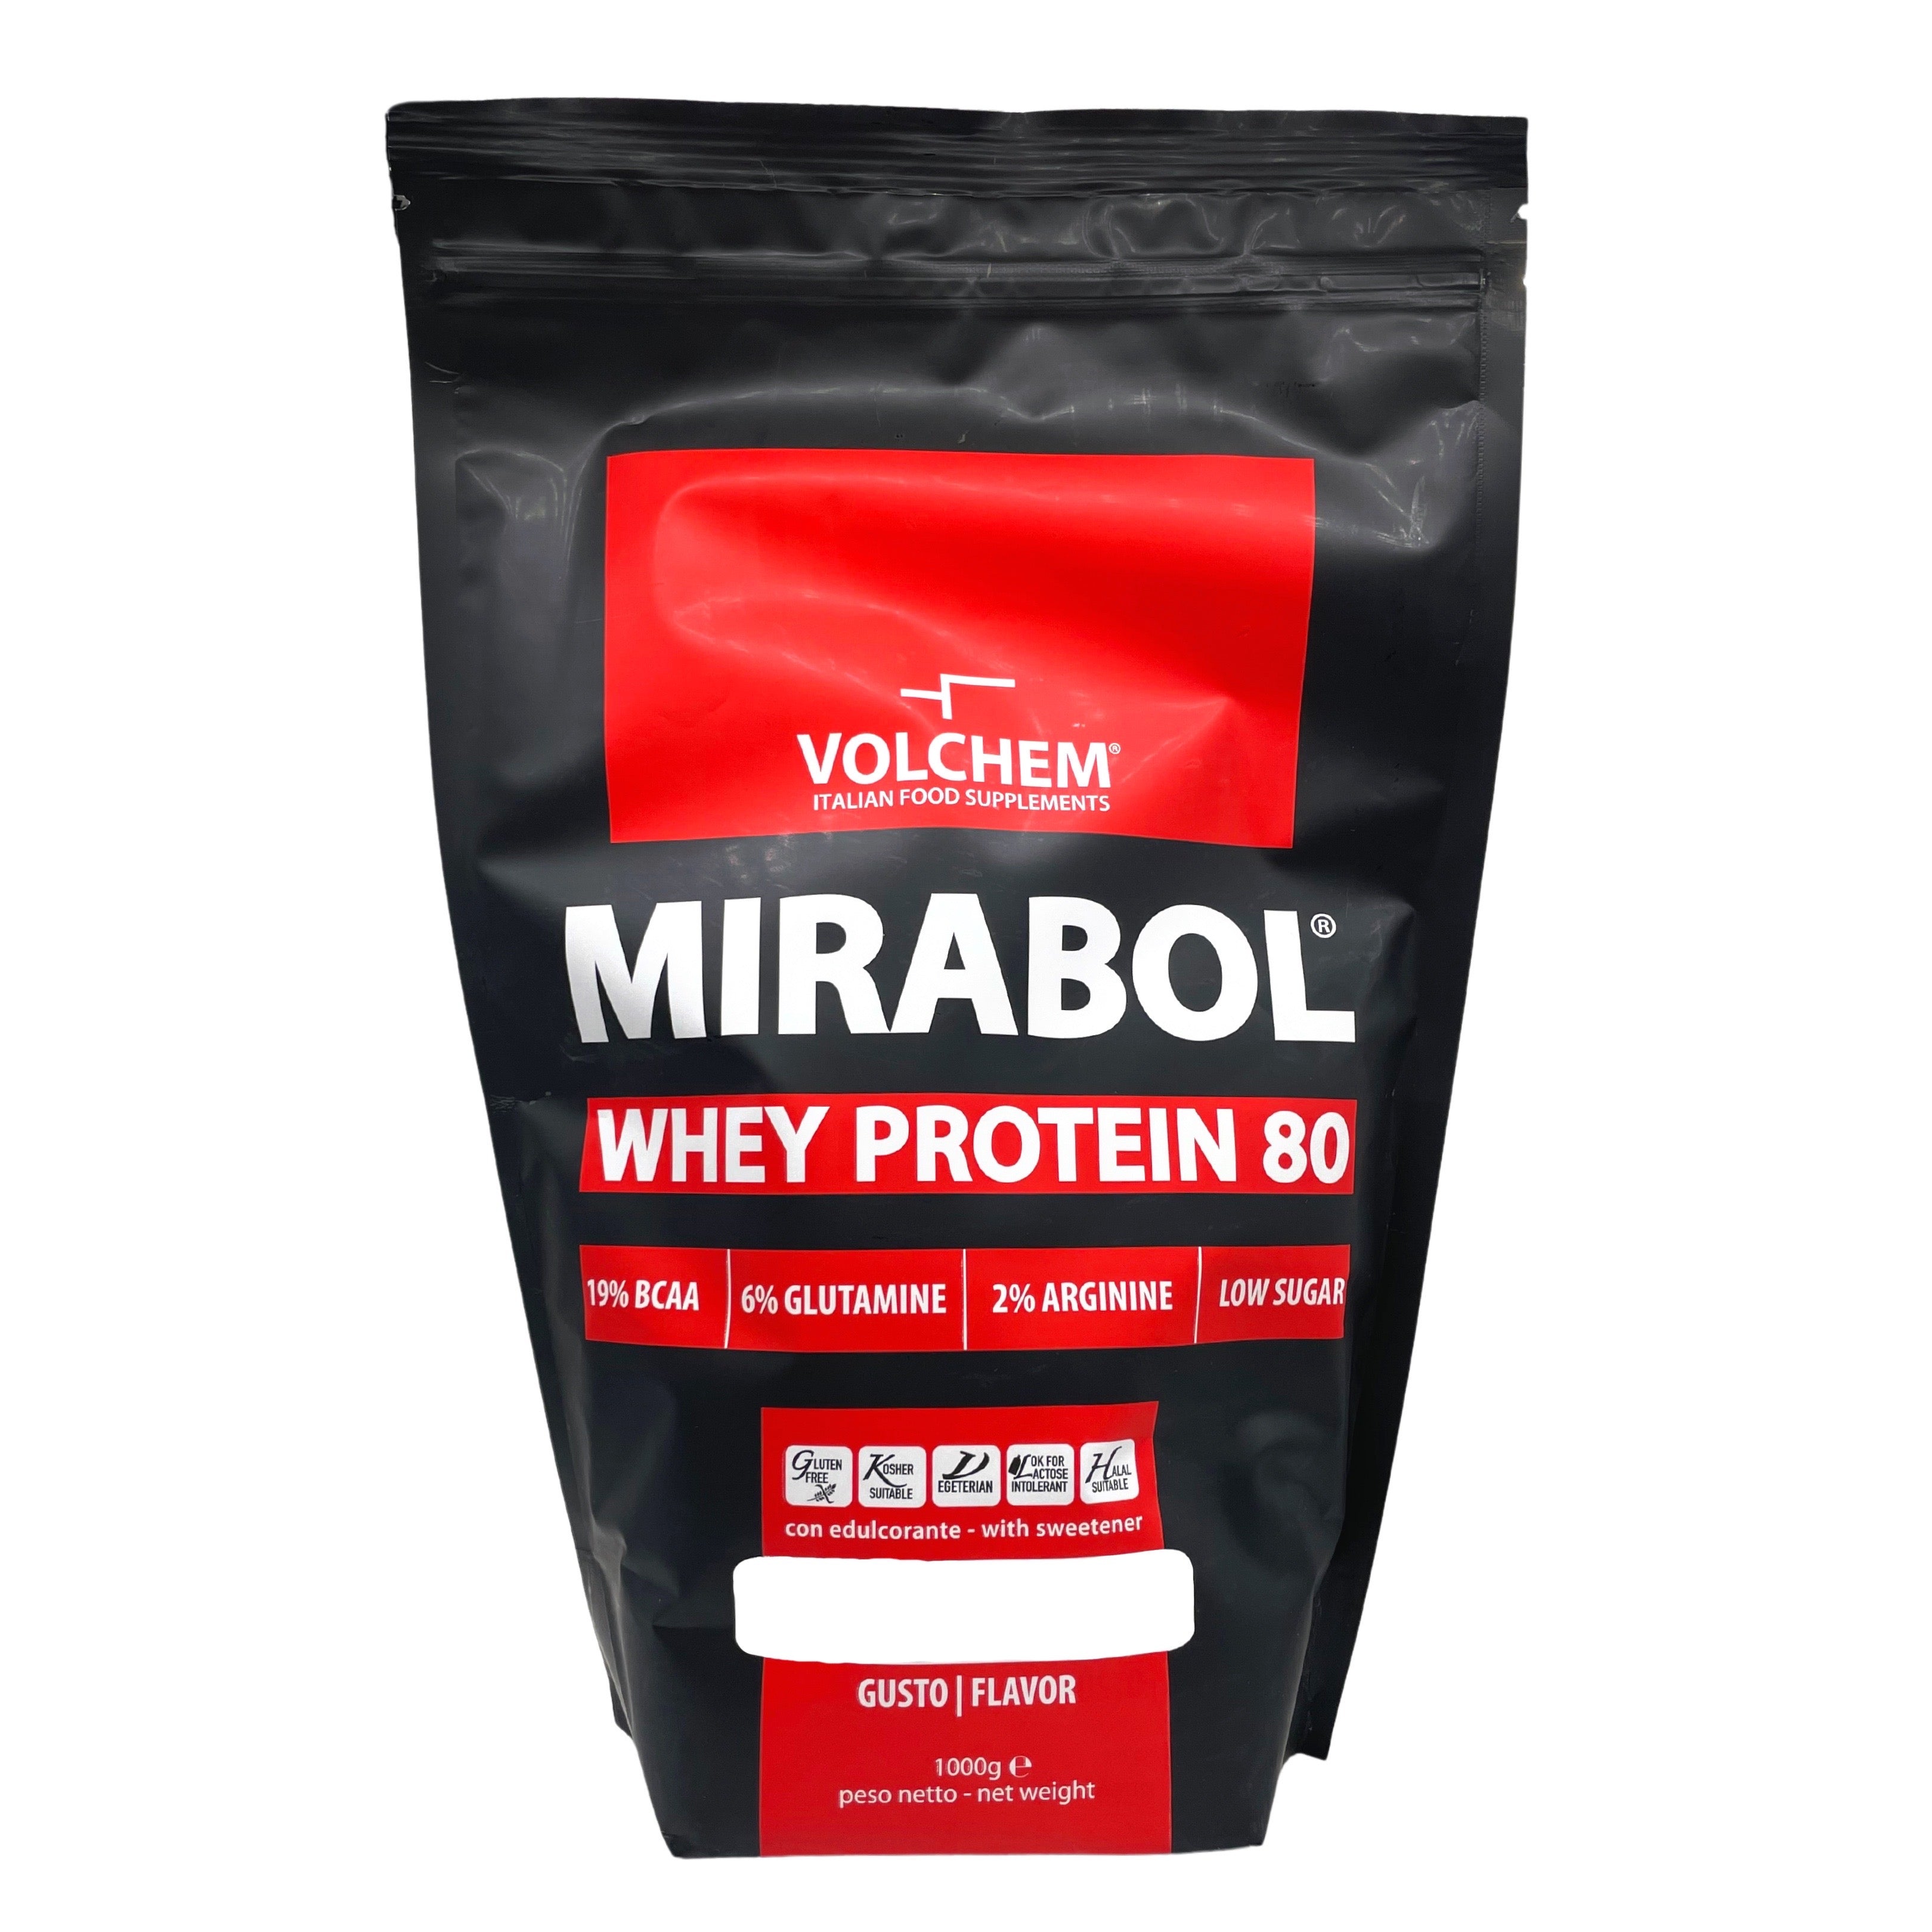 Volchem Mirabol Whey Protein 80% Nocciola 1kg